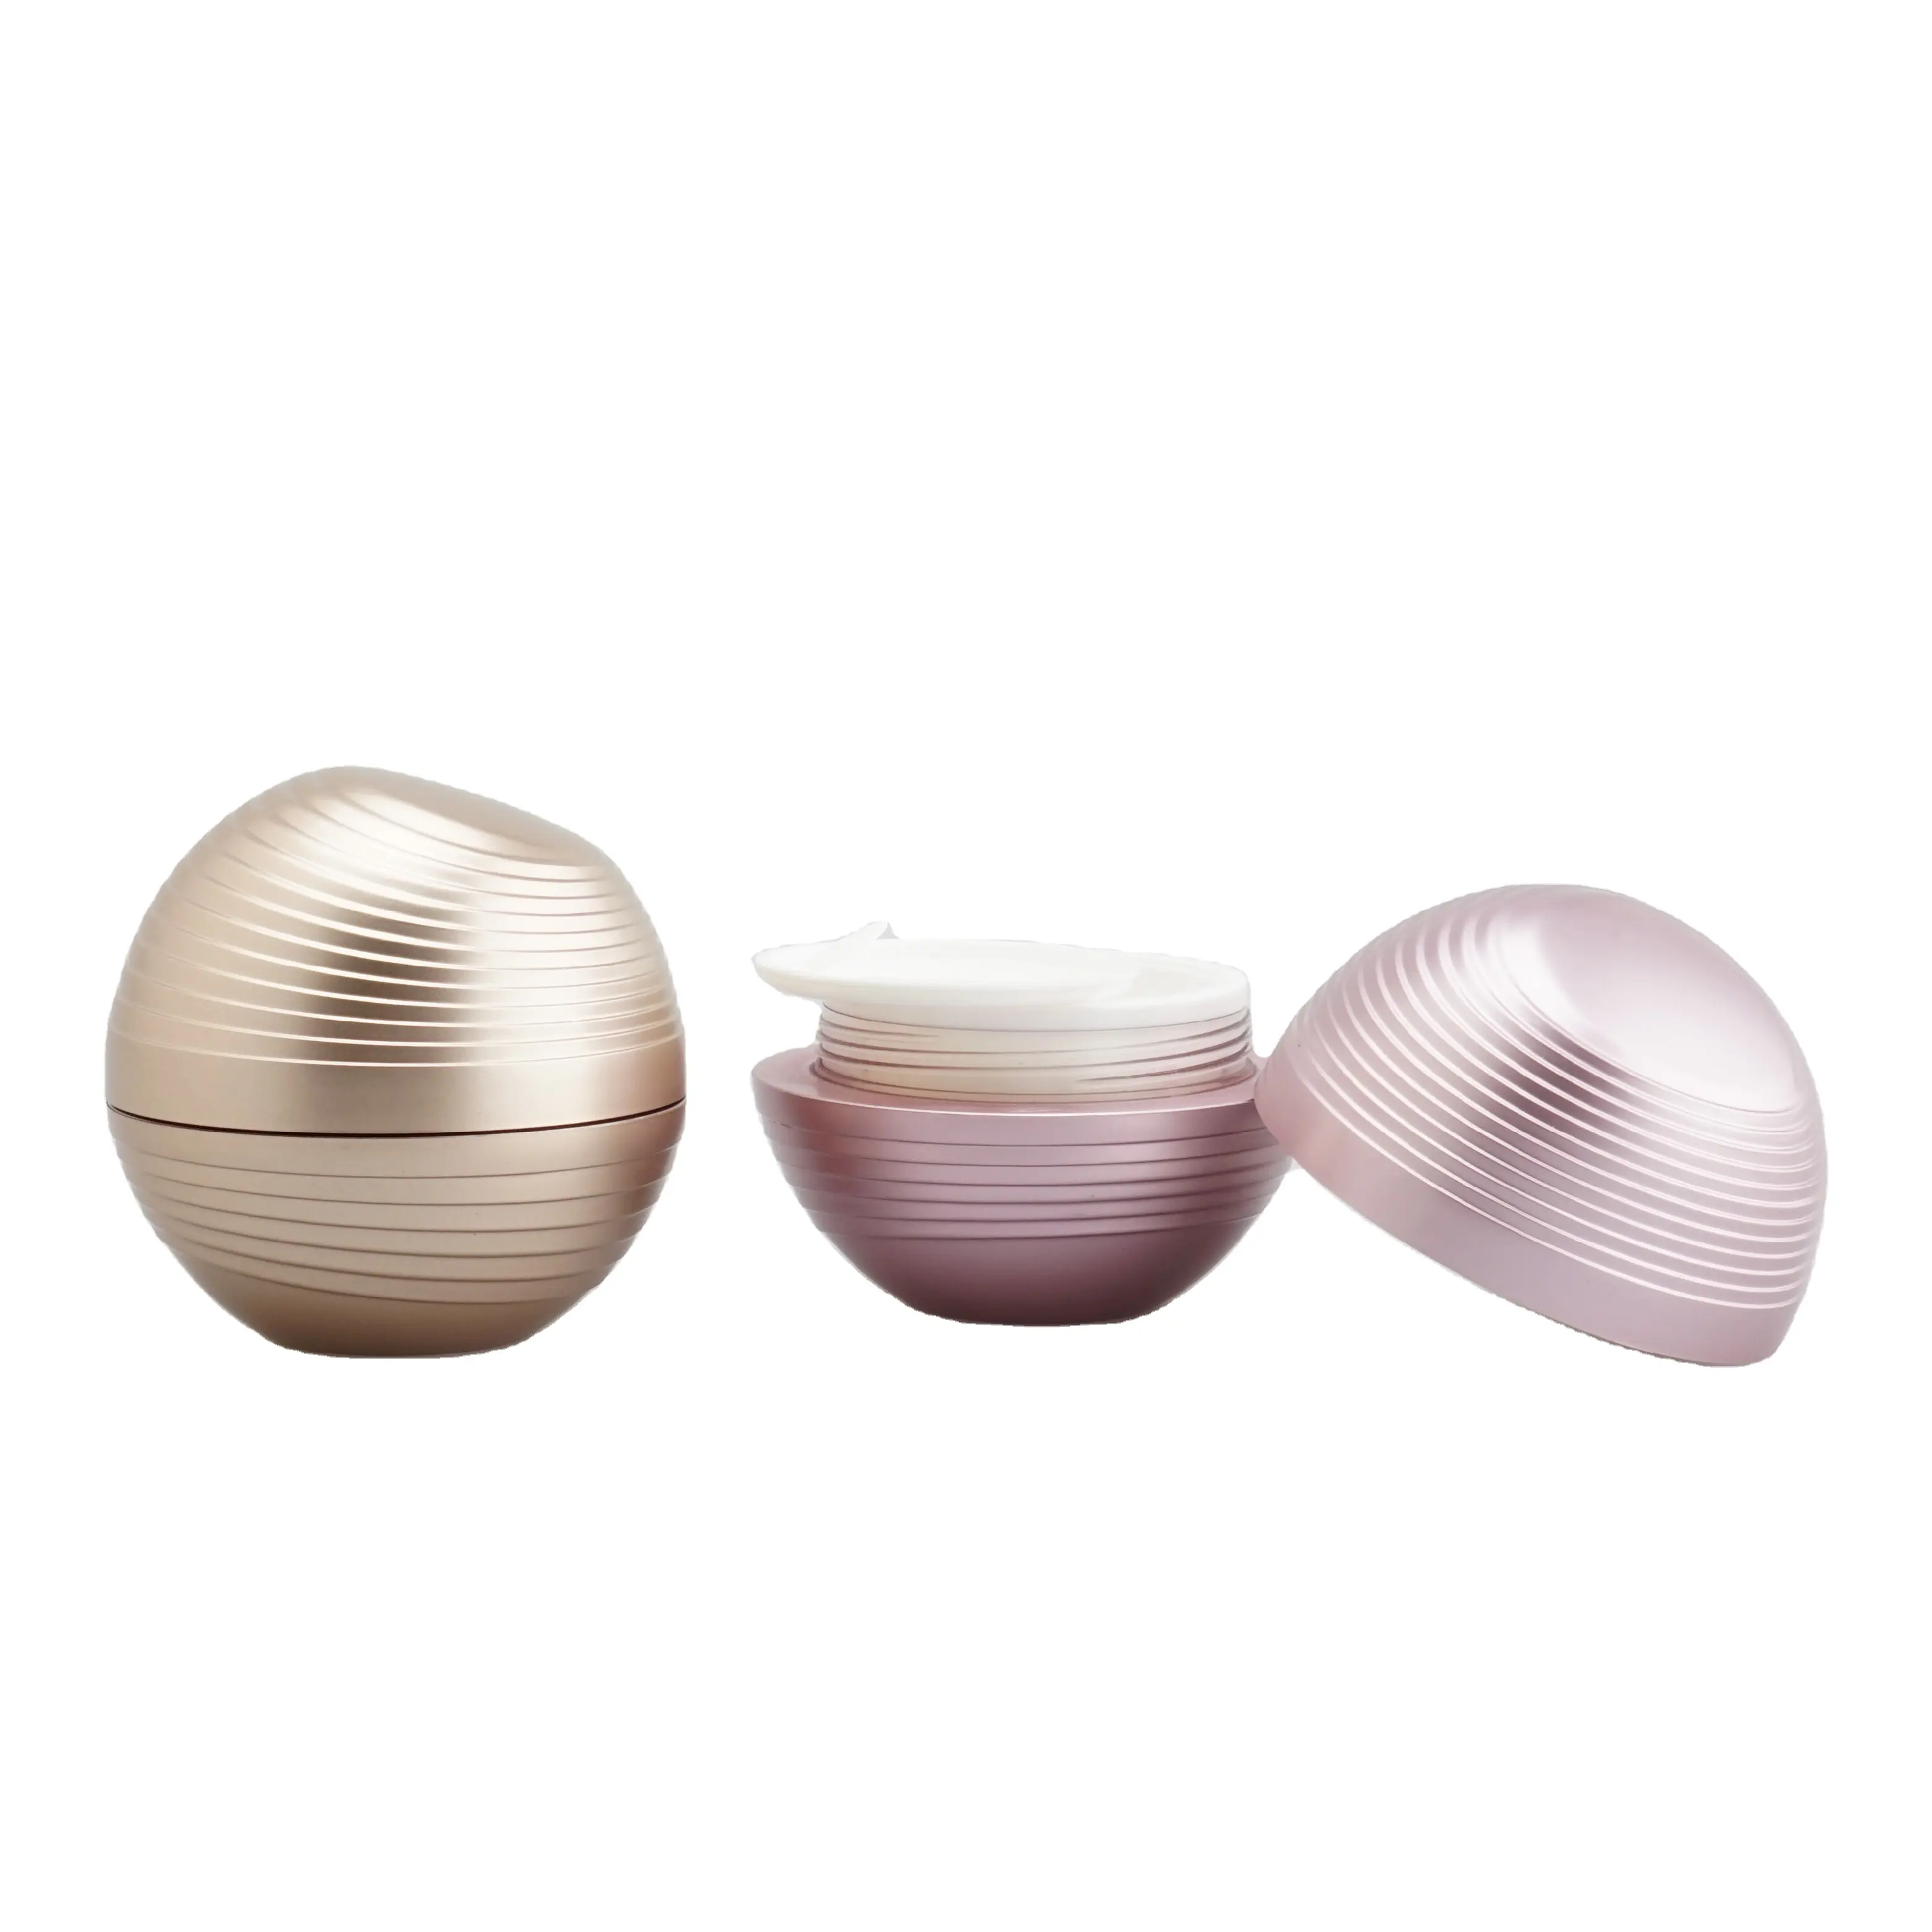 Pot acrylique en forme de sphère Offre Spéciale 30g 50g pour emballage cosmétique en plastique La bouteille de poudre libre peut choisir